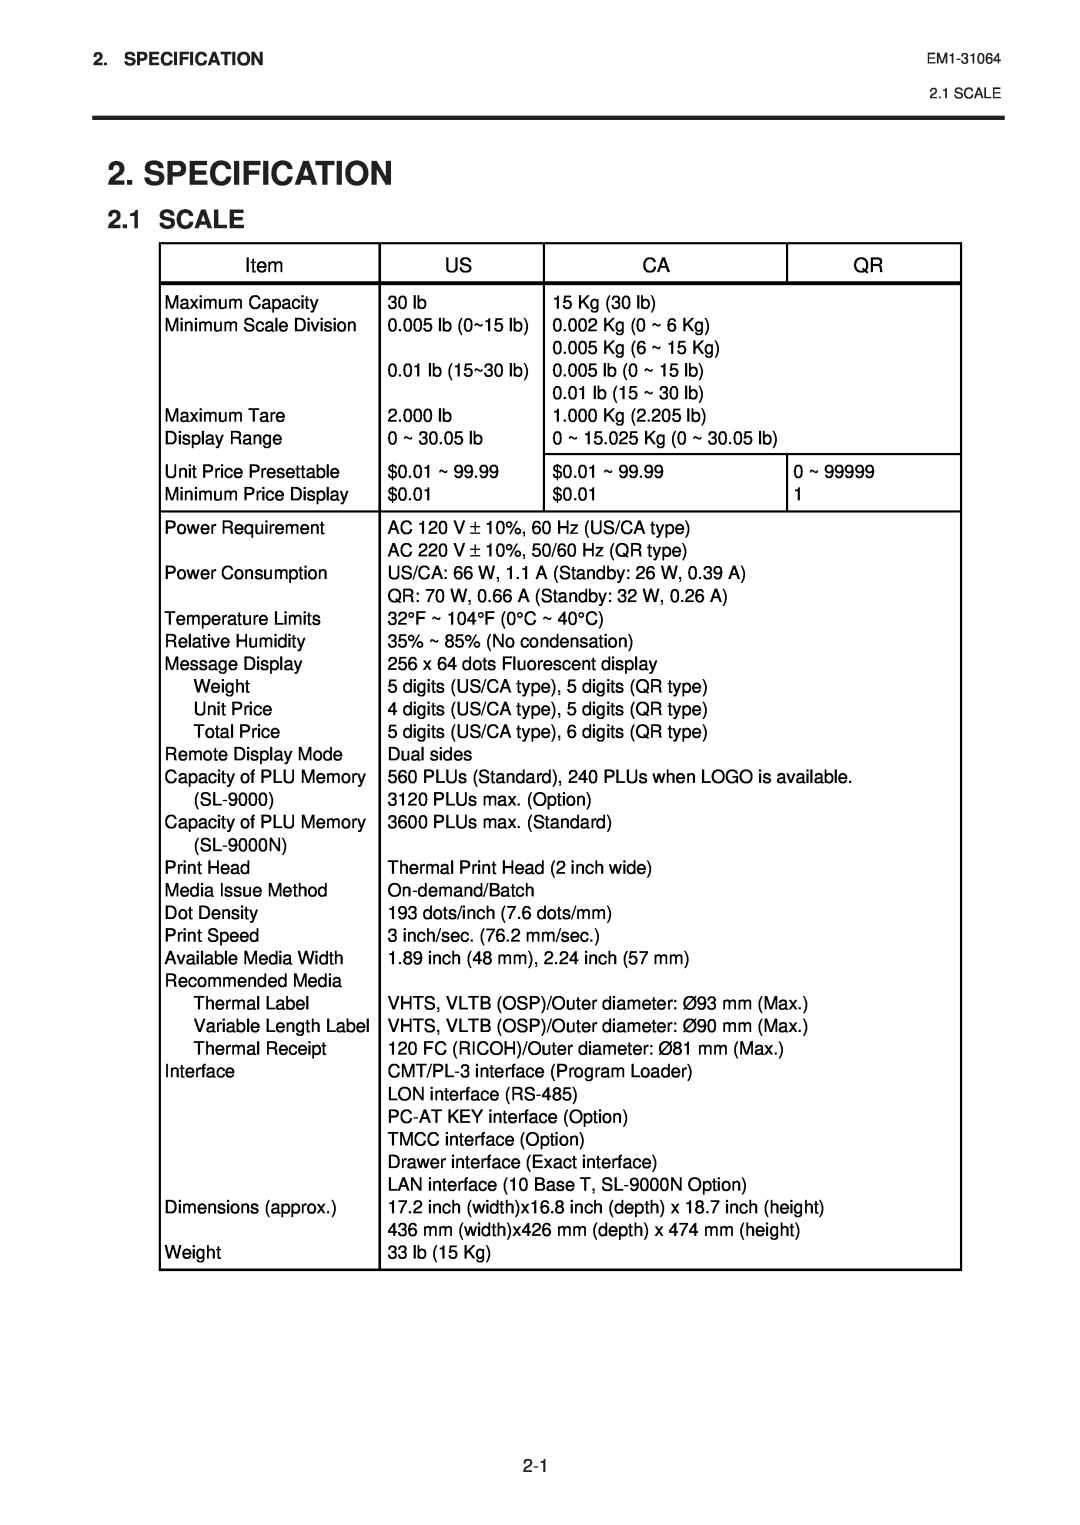 Toshiba EM1-31064JE, SL-9000N-FFB, SL-9000-FFB owner manual Specification, Scale 